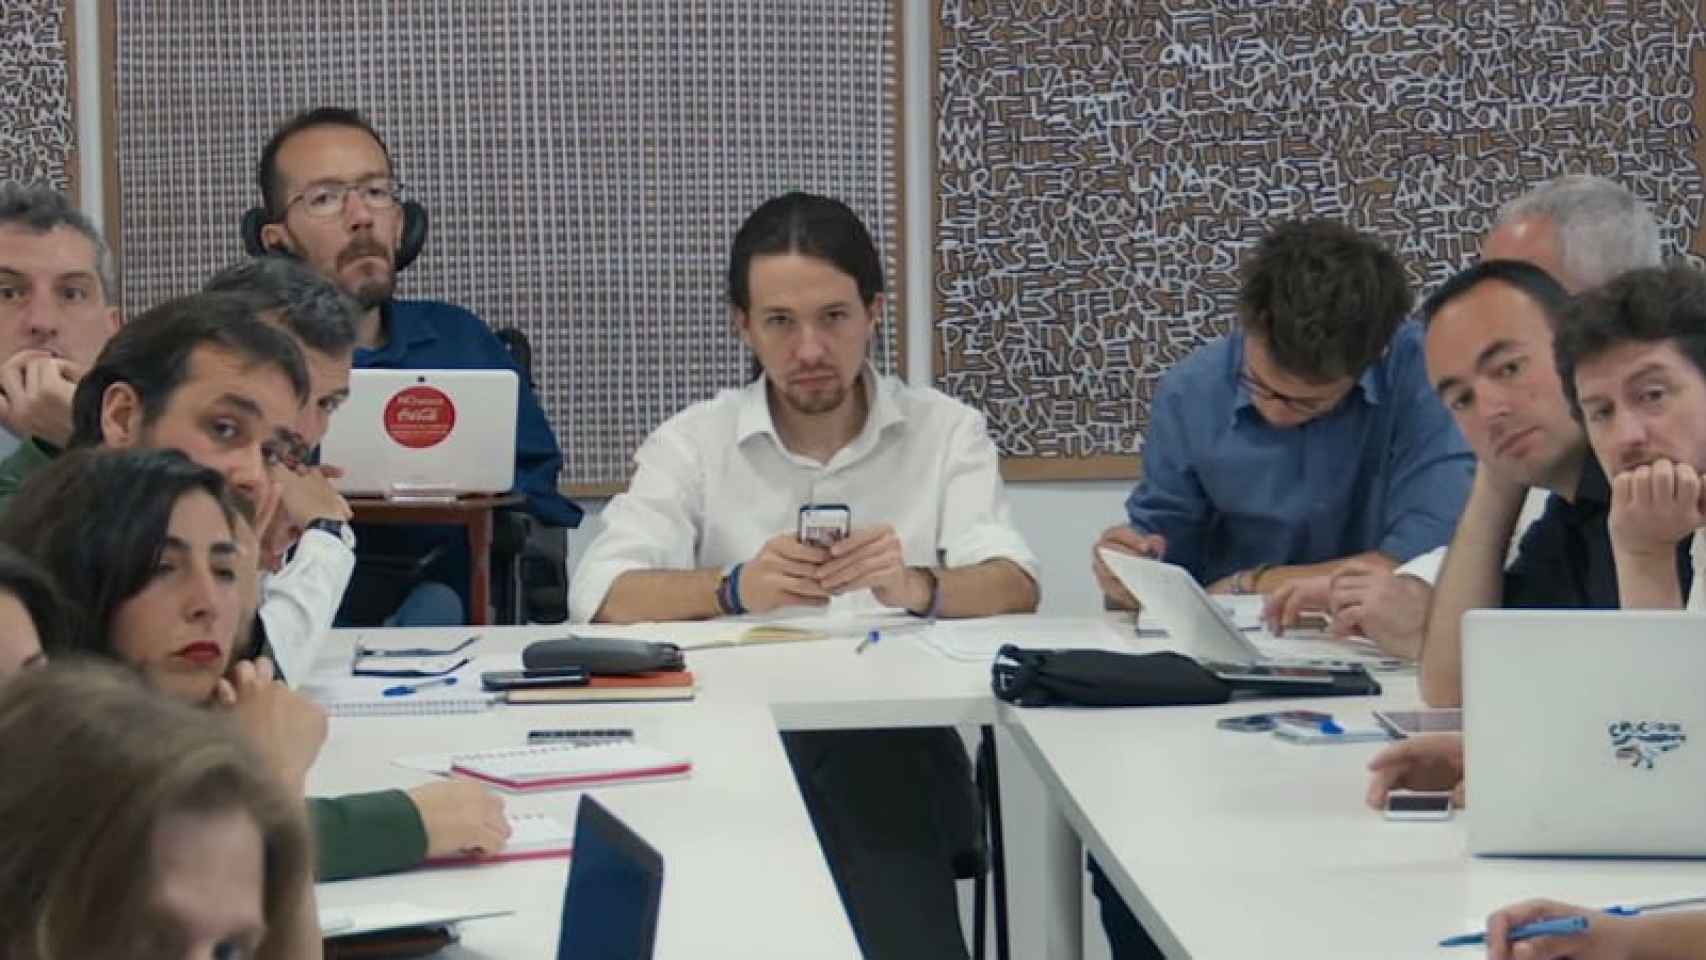 Escena del documental de 'Política. Manual de instrucciones' en el que aparece Pablo Iglesias y su equipo de Podemos.